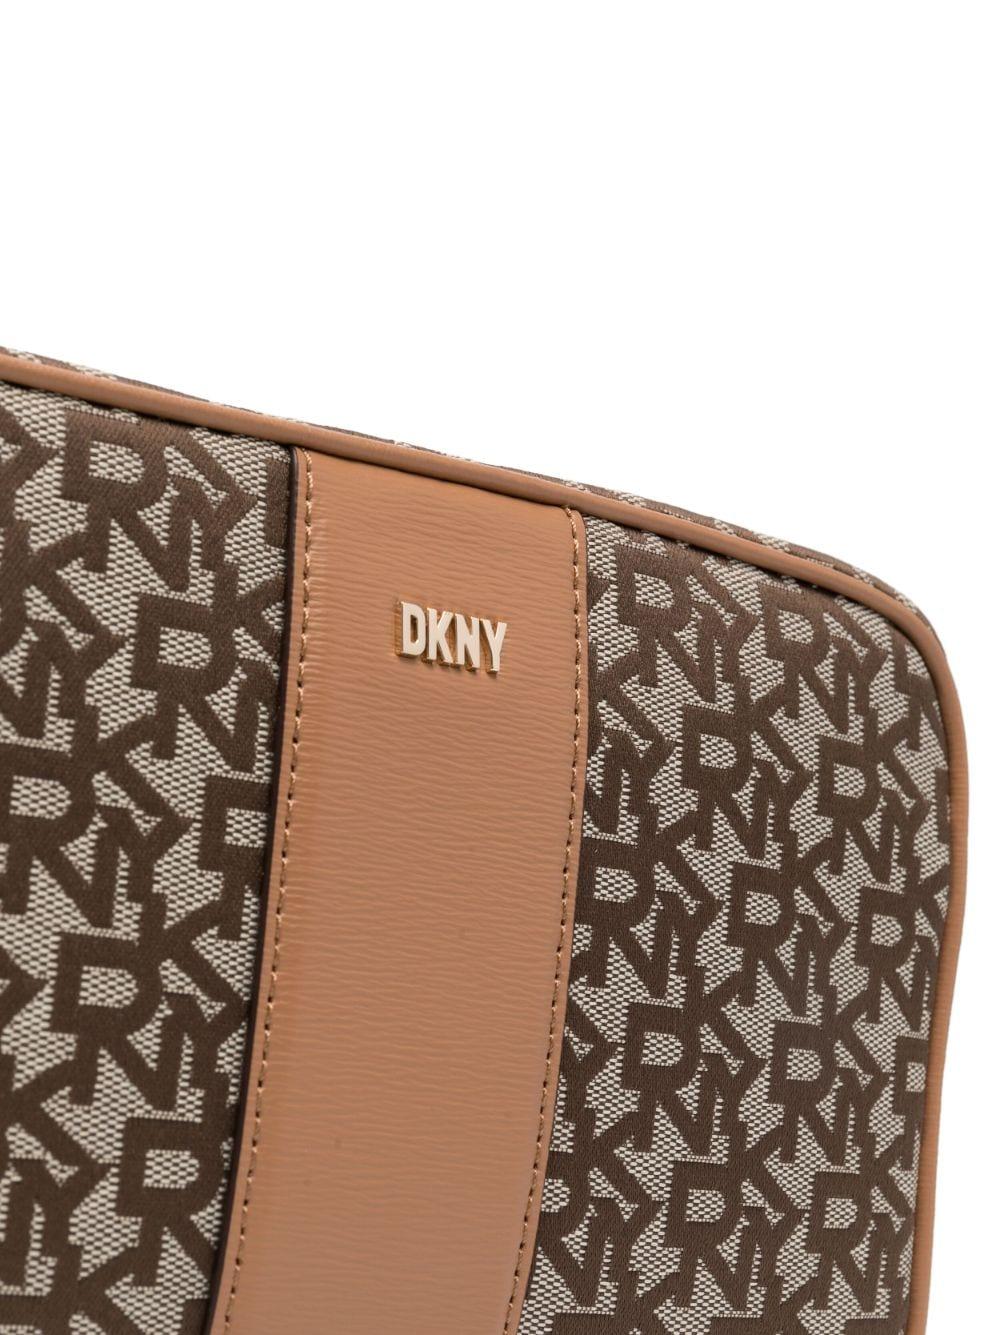 DKNY Bryant Monogram Crossbody Bag - Farfetch